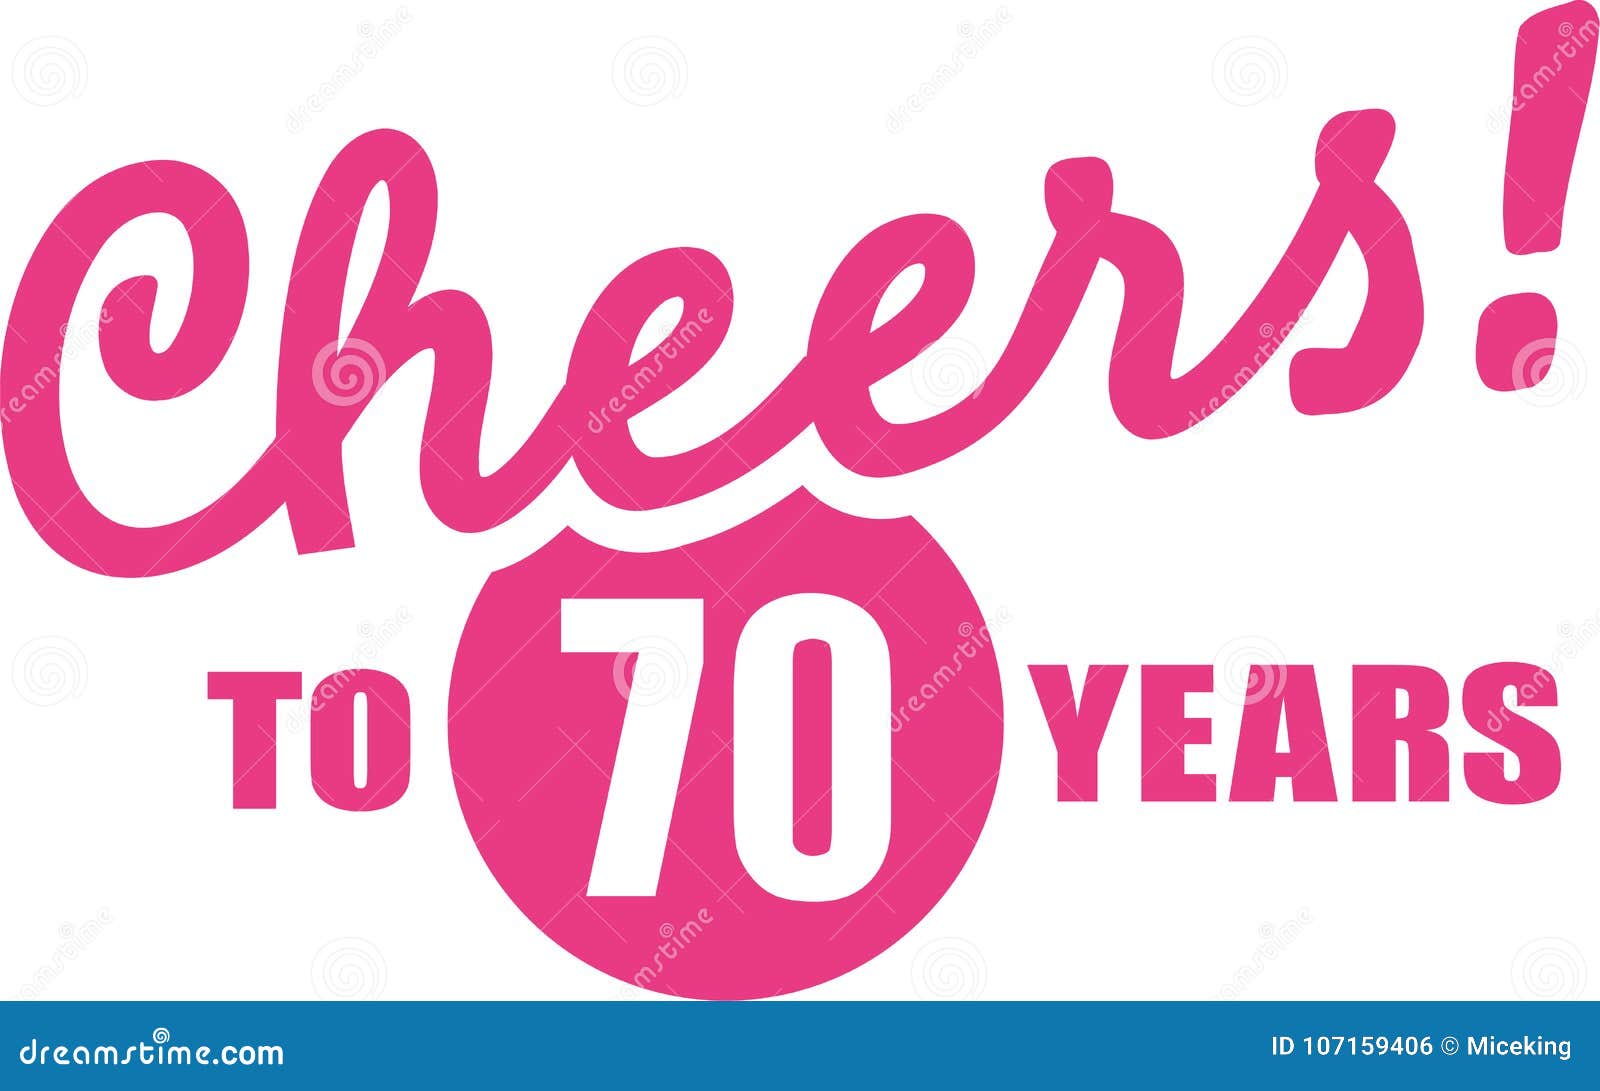 Verwonderlijk Cheers To 70 Years - 70th Birthday Stock Vector - Illustration of IZ-27